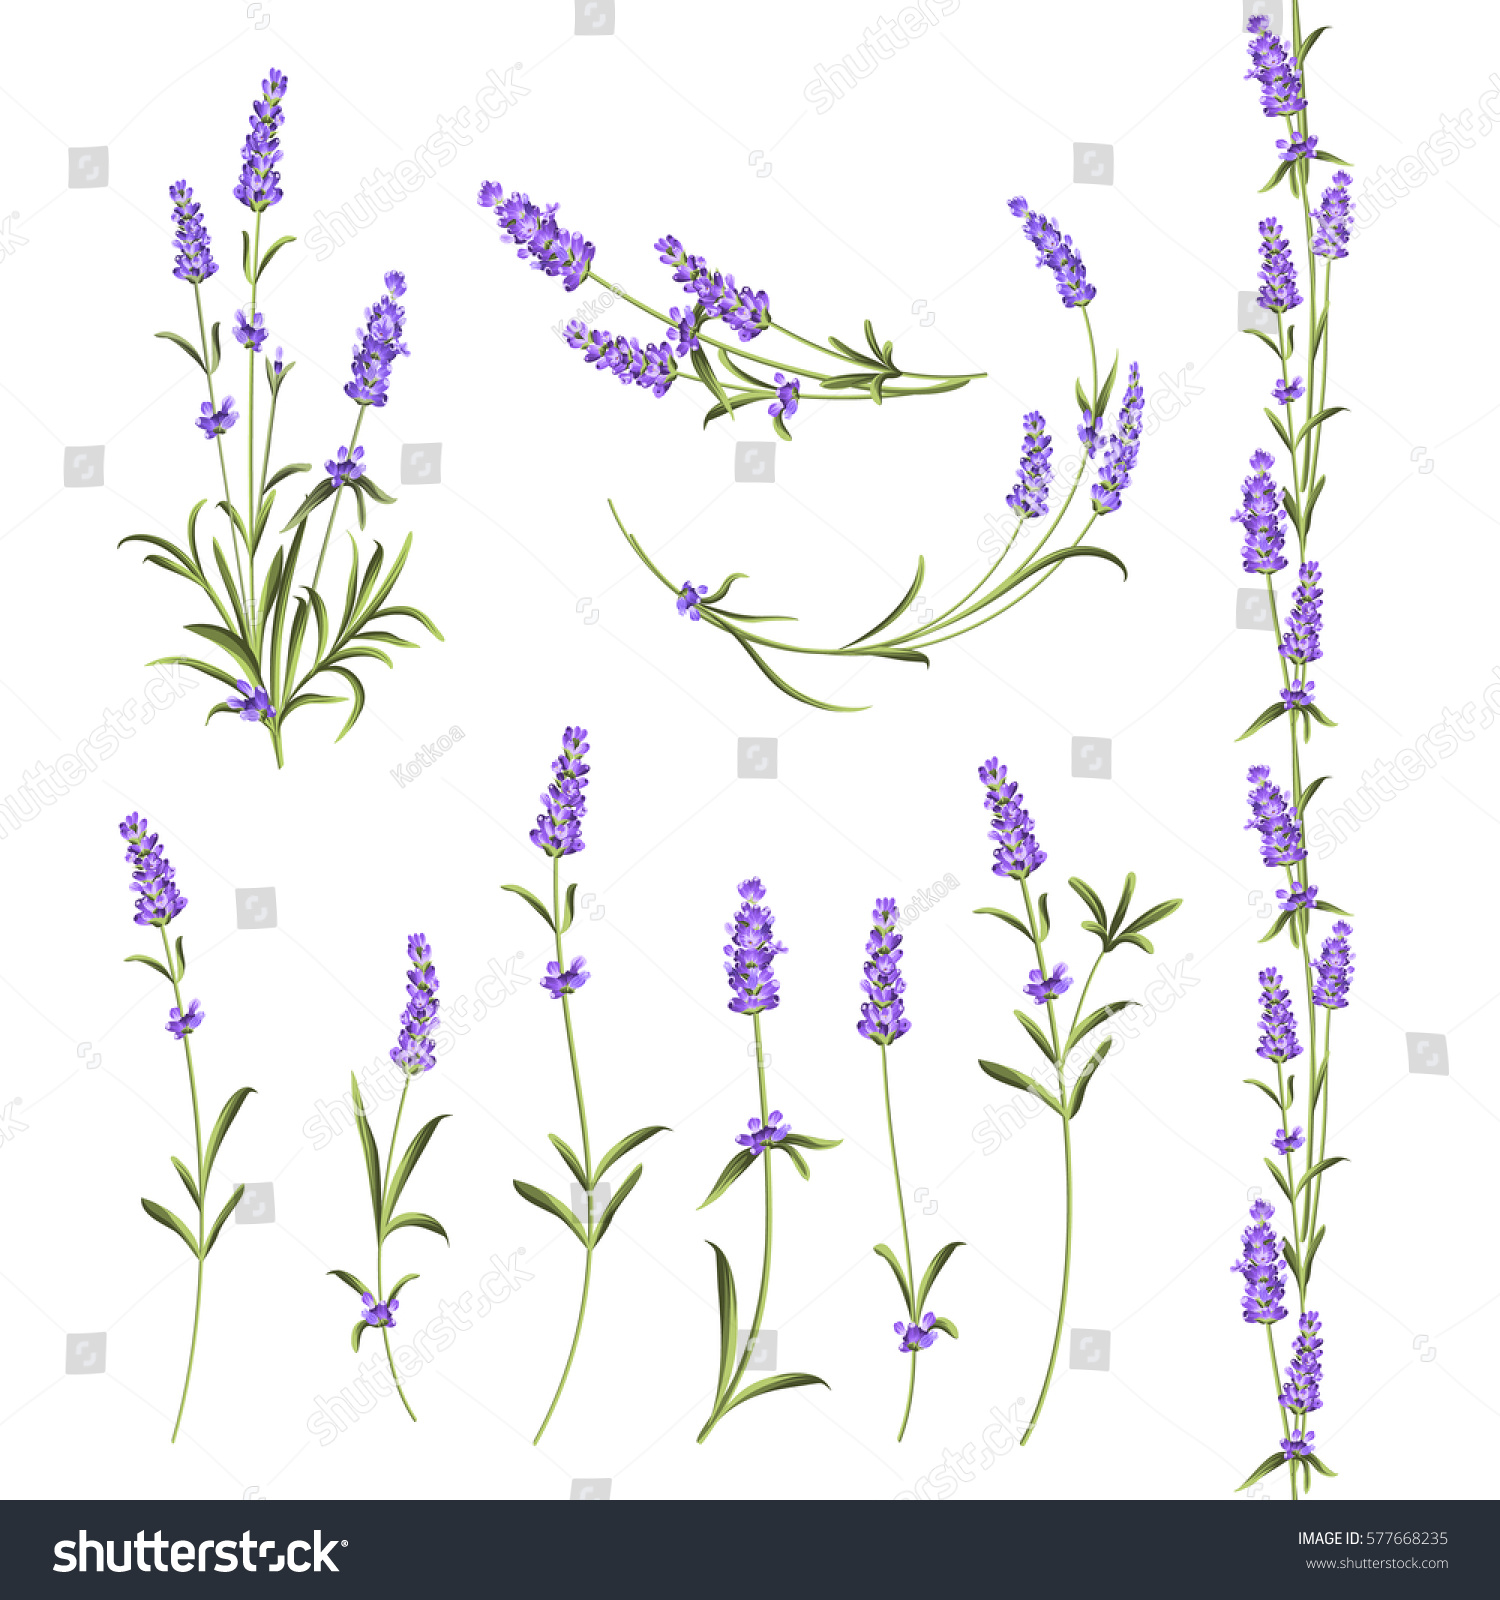 Set of lavender flowers elements. Botanical illustration. Collection of lavender flowers on a white background. Vector illustration bundle. #577668235